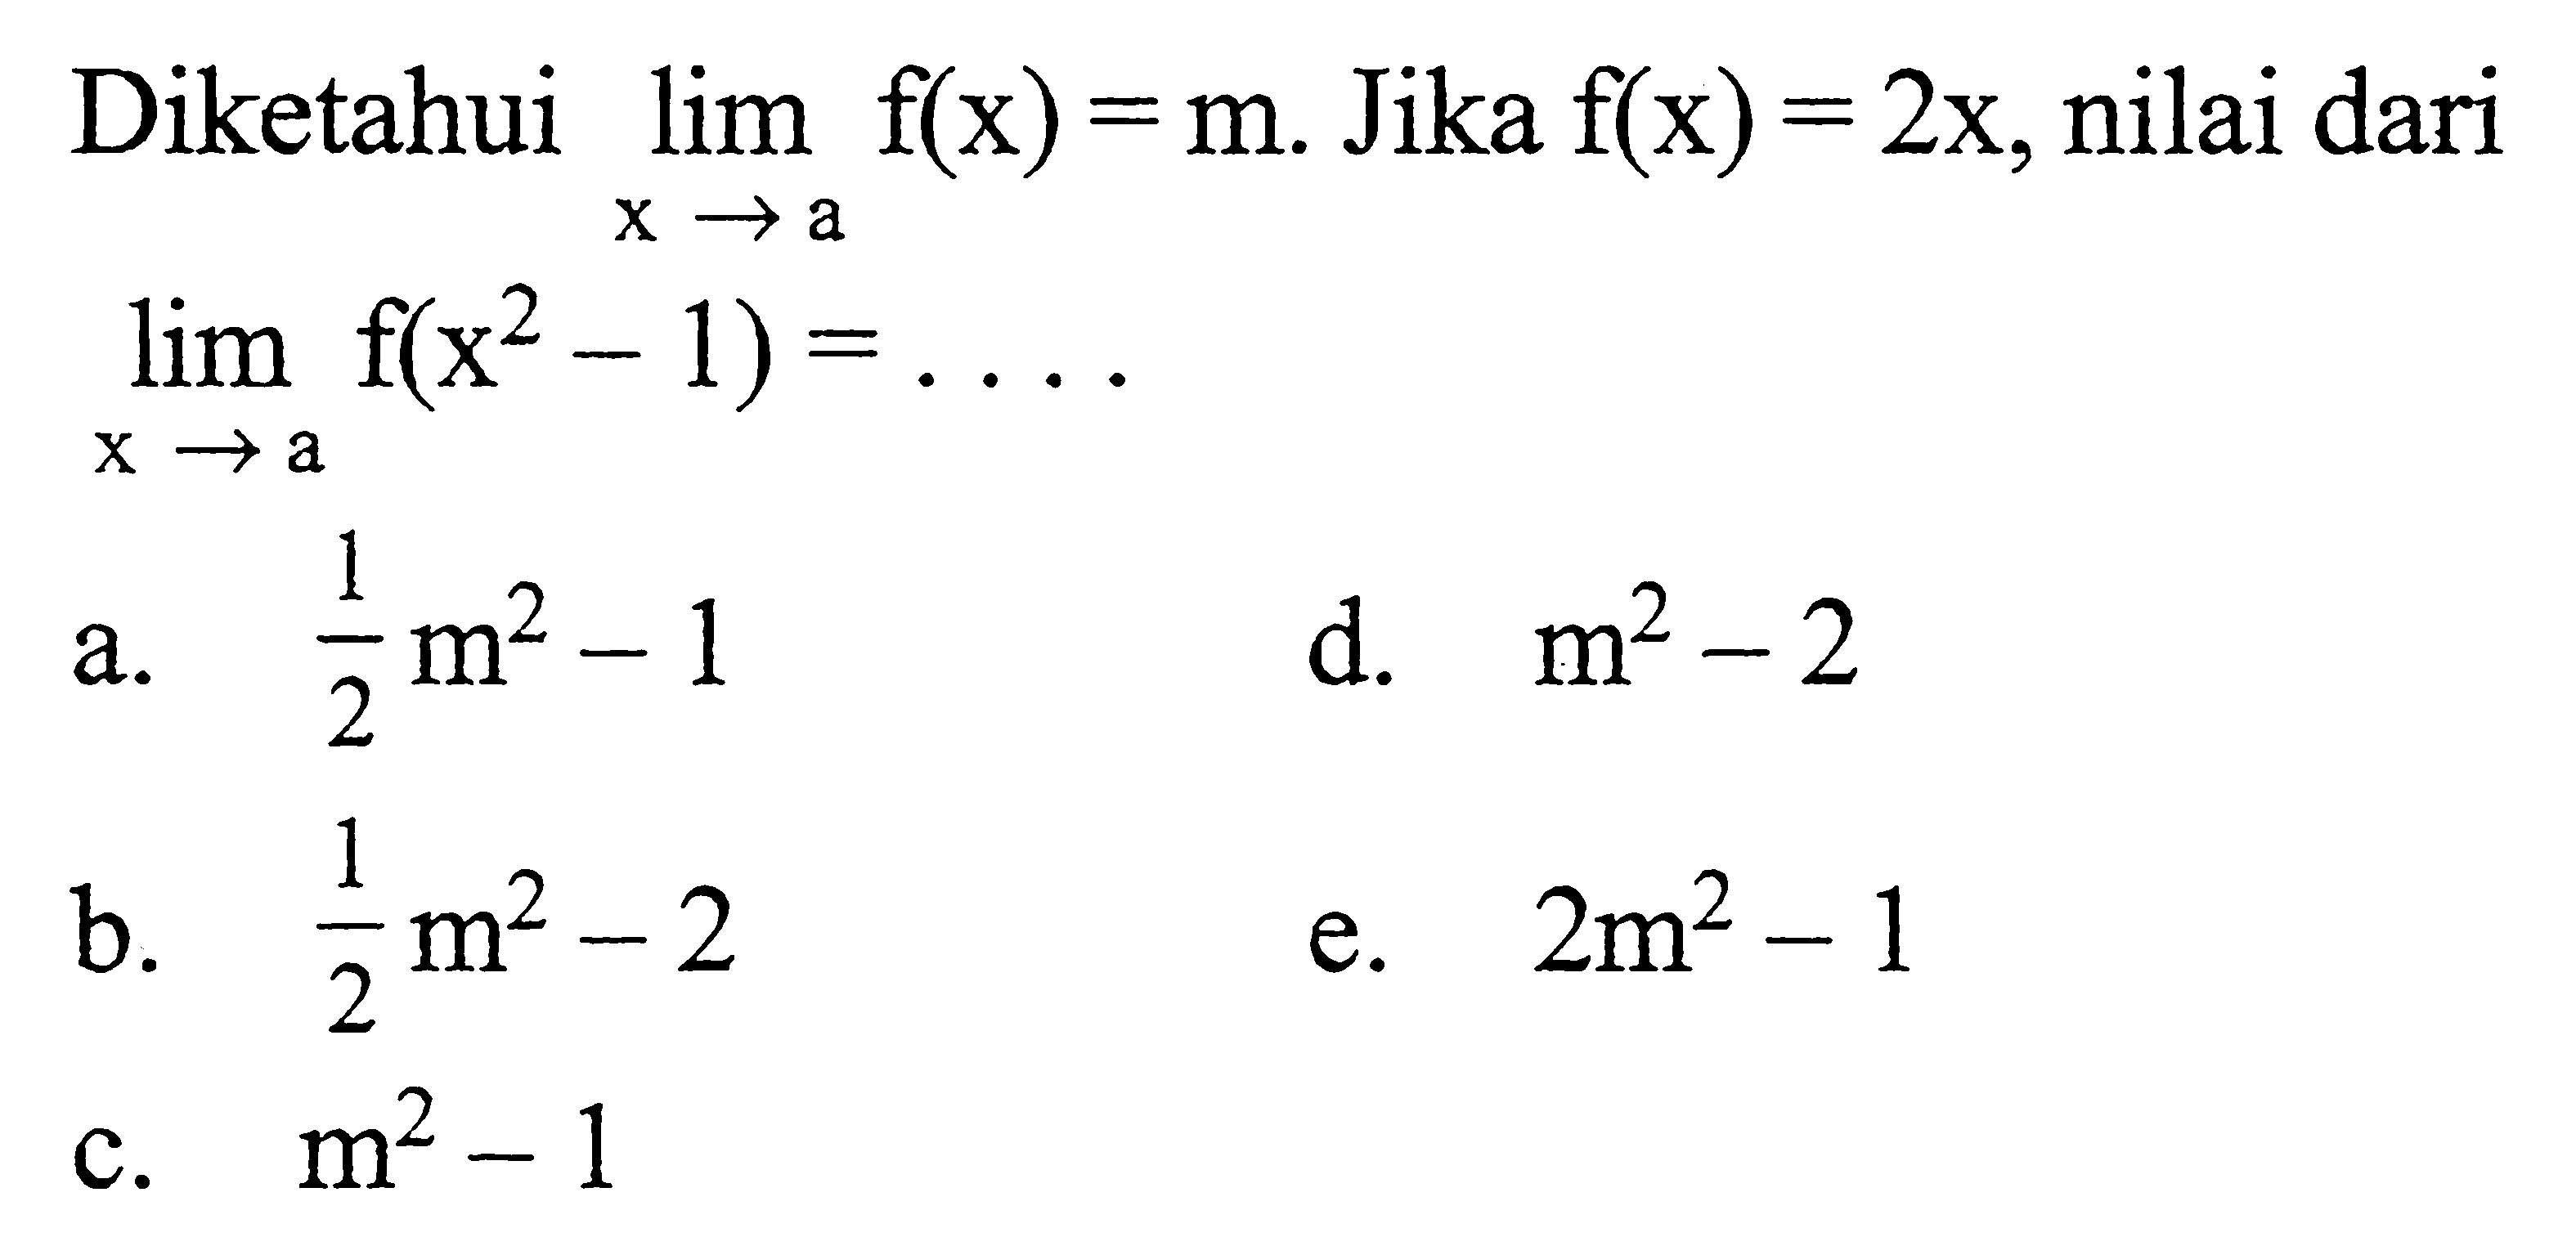 Diketahui lim x mendekati a f(x)=m. Jika f(x)=2x, nilai dari lim x mendekati a f(x^2-1)=.... 